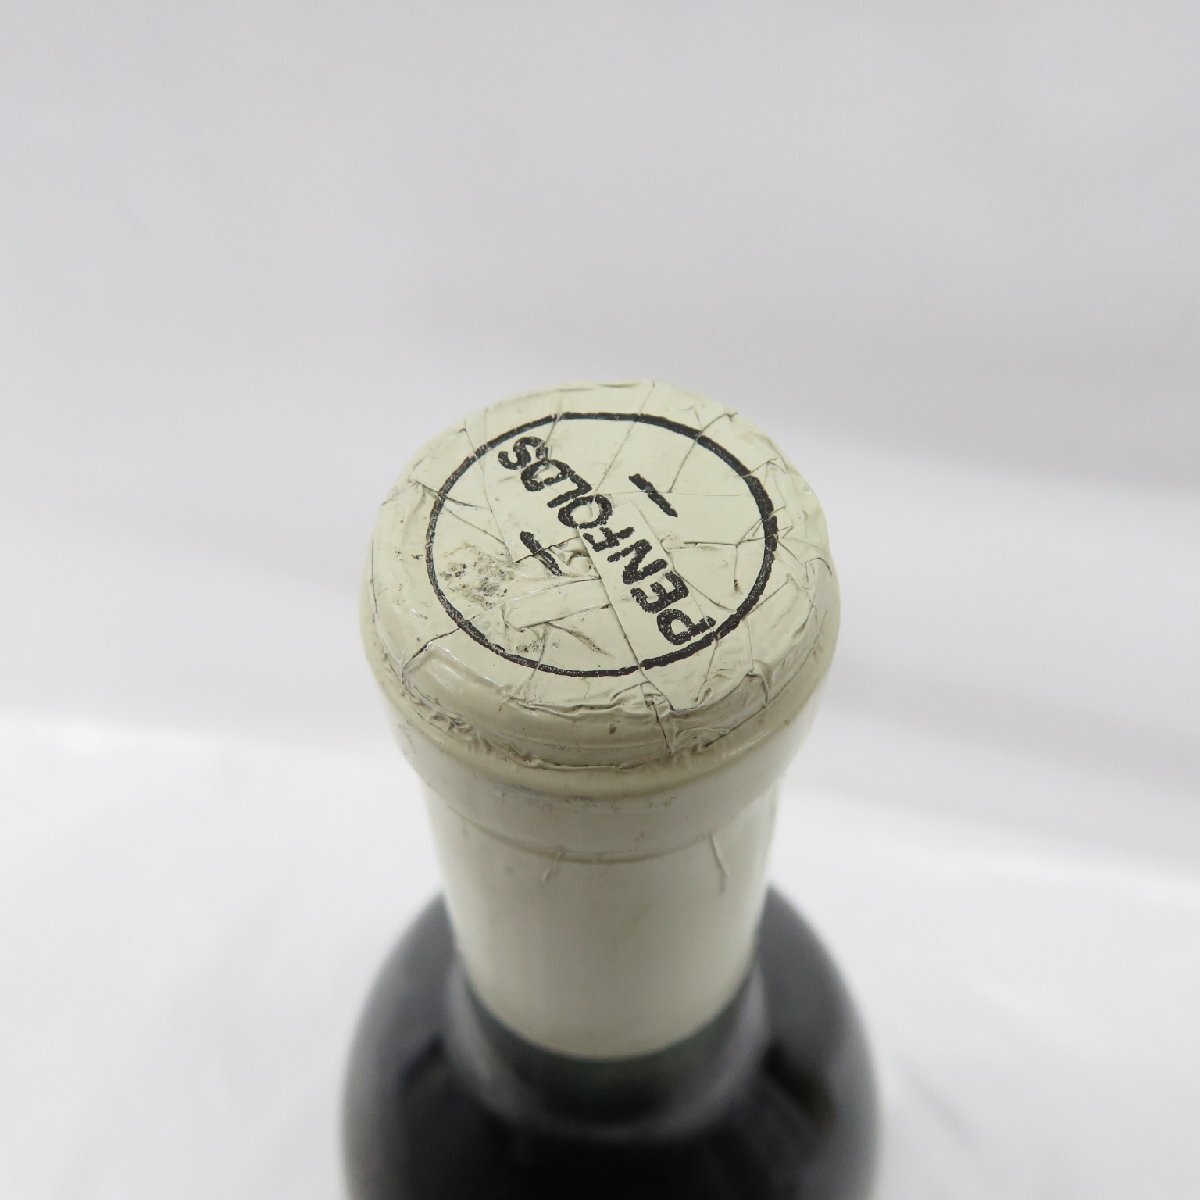 [ не . штекер ]Penfolds авторучка four ruz gran ji - -mite-jiBIN95 1979 1981 бутылка in красный вино 750ml 12.9% 11567753 0519